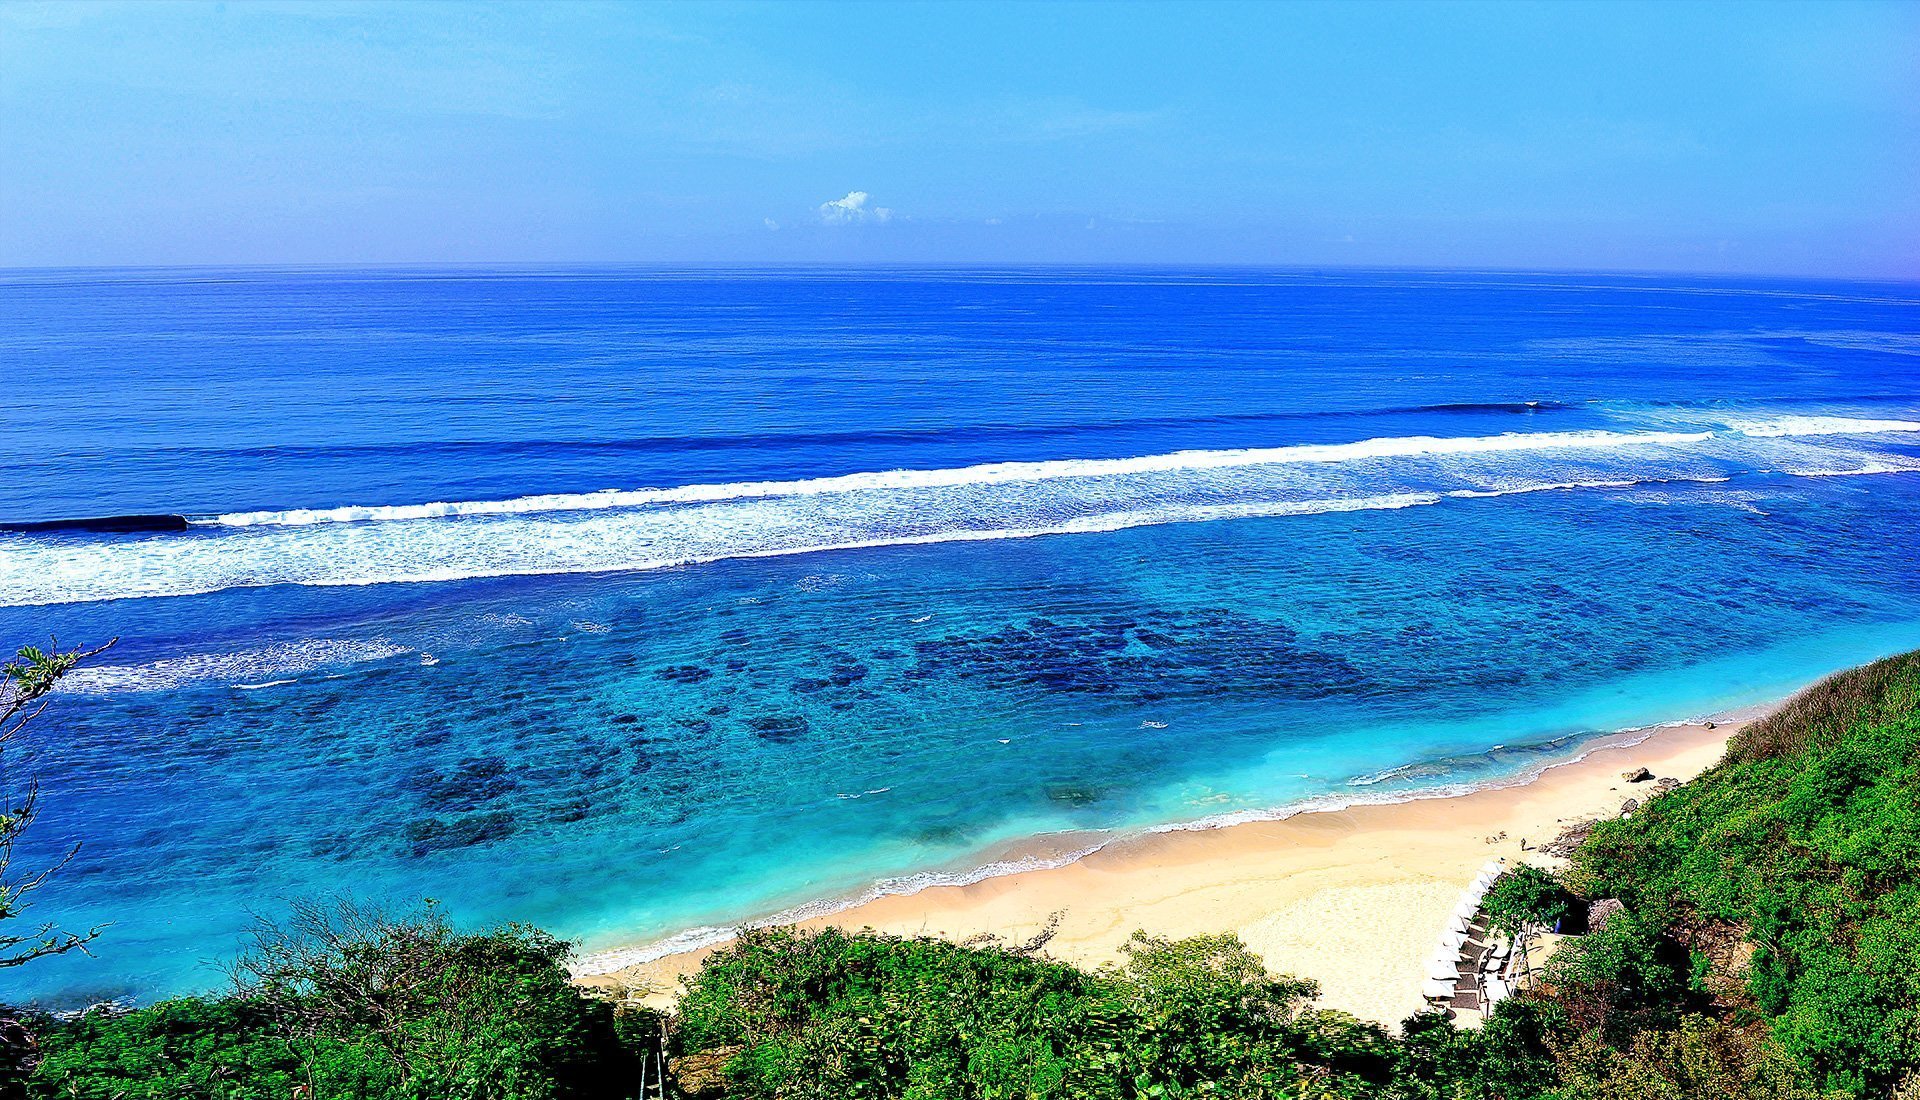 Бесплатный индийский океан. Бали (остров в малайском архипелаге). Индийский океан Бали. Бали Атлантический океан. Пляж океан Бали.